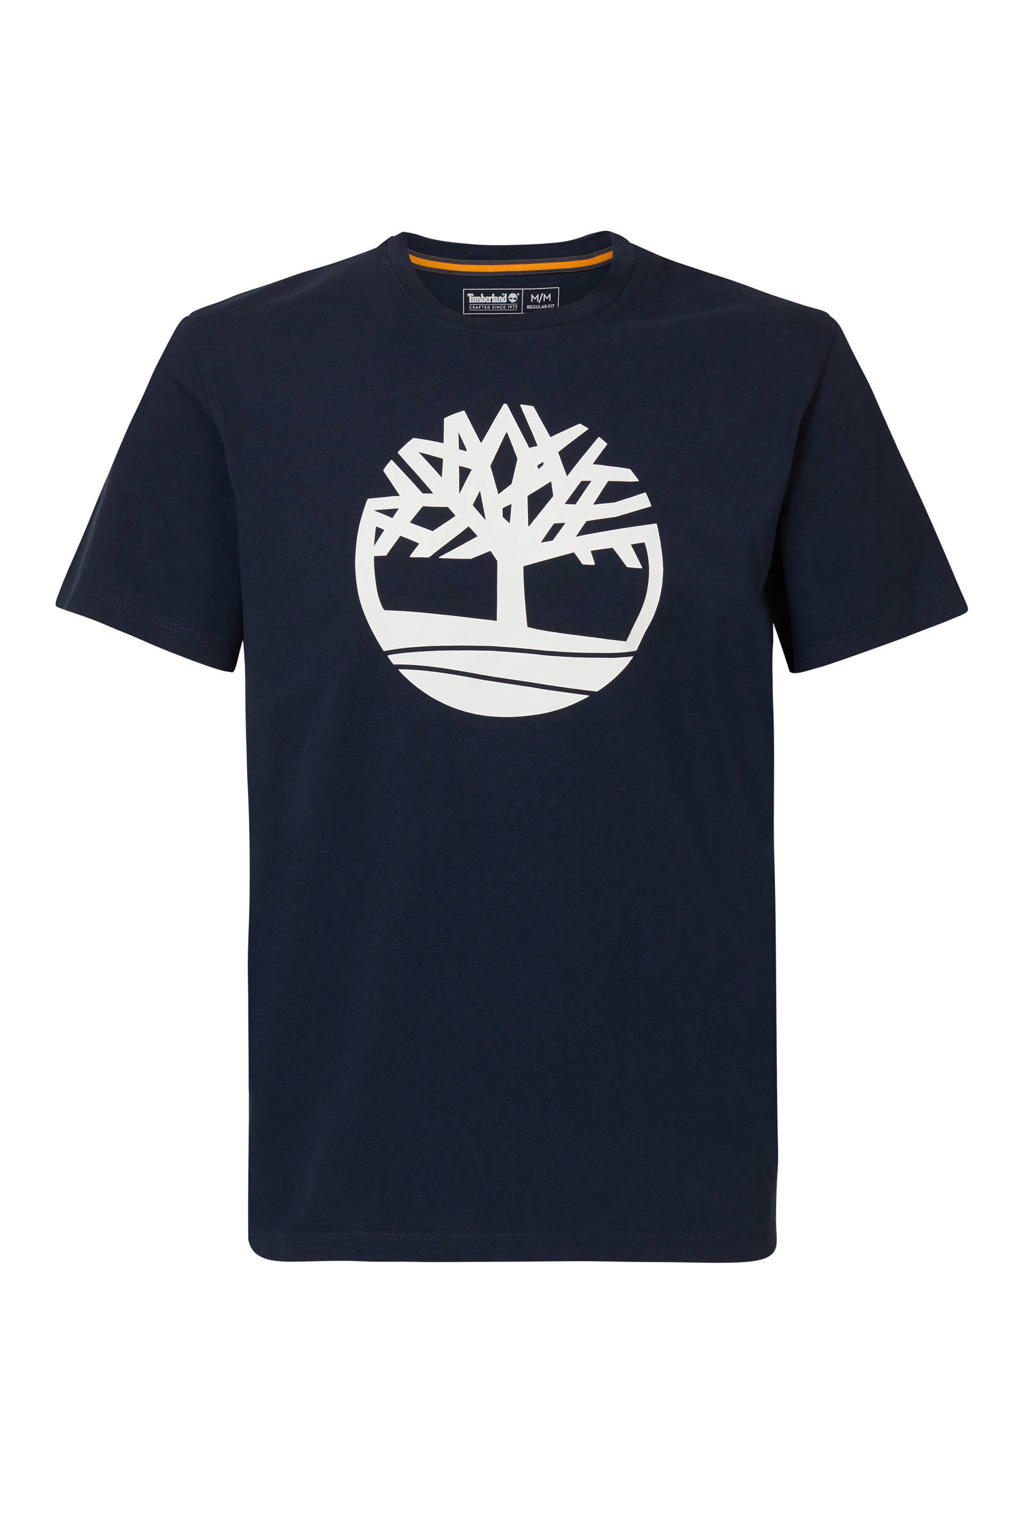 Marineblauwe heren Timberland T-shirt van biologisch katoen met logo dessin, korte mouwen en ronde hals